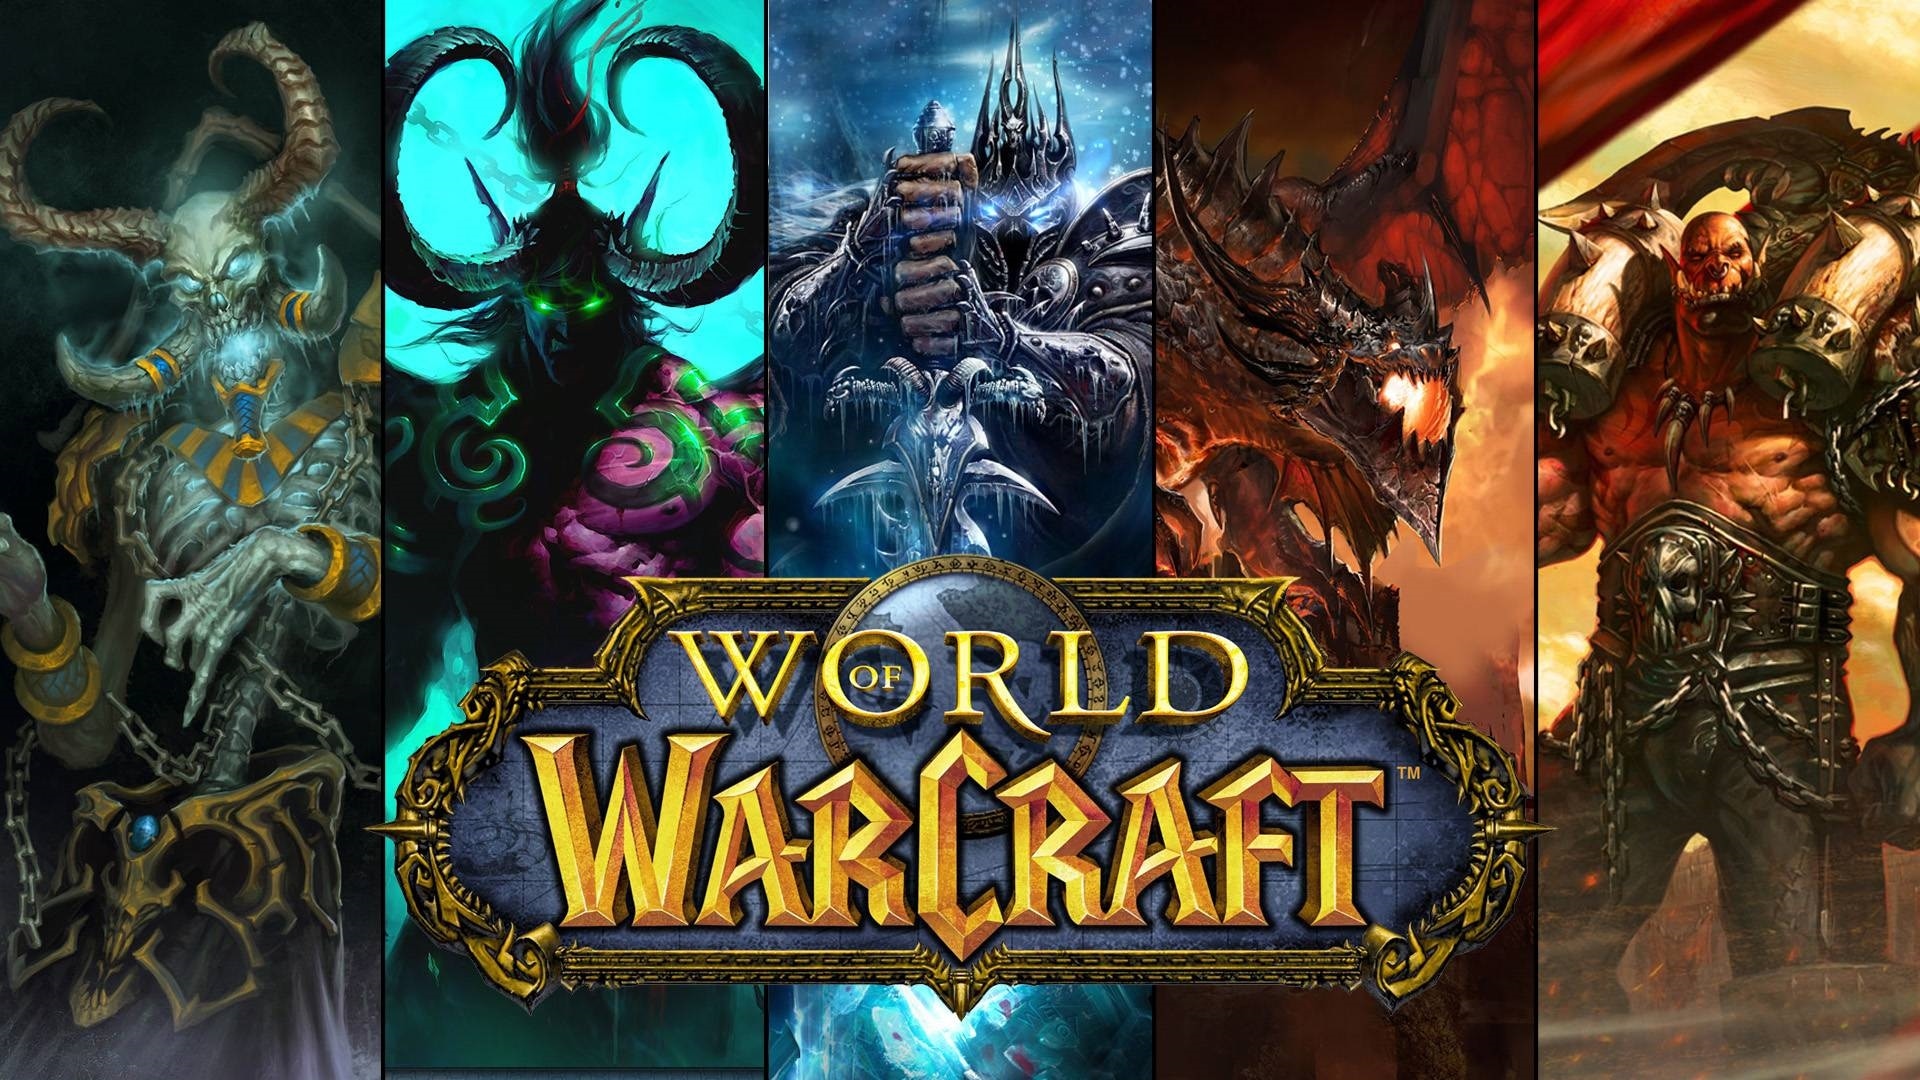 Warcraft Imp Porn - Steam Workshop::World of Warcraft filming props